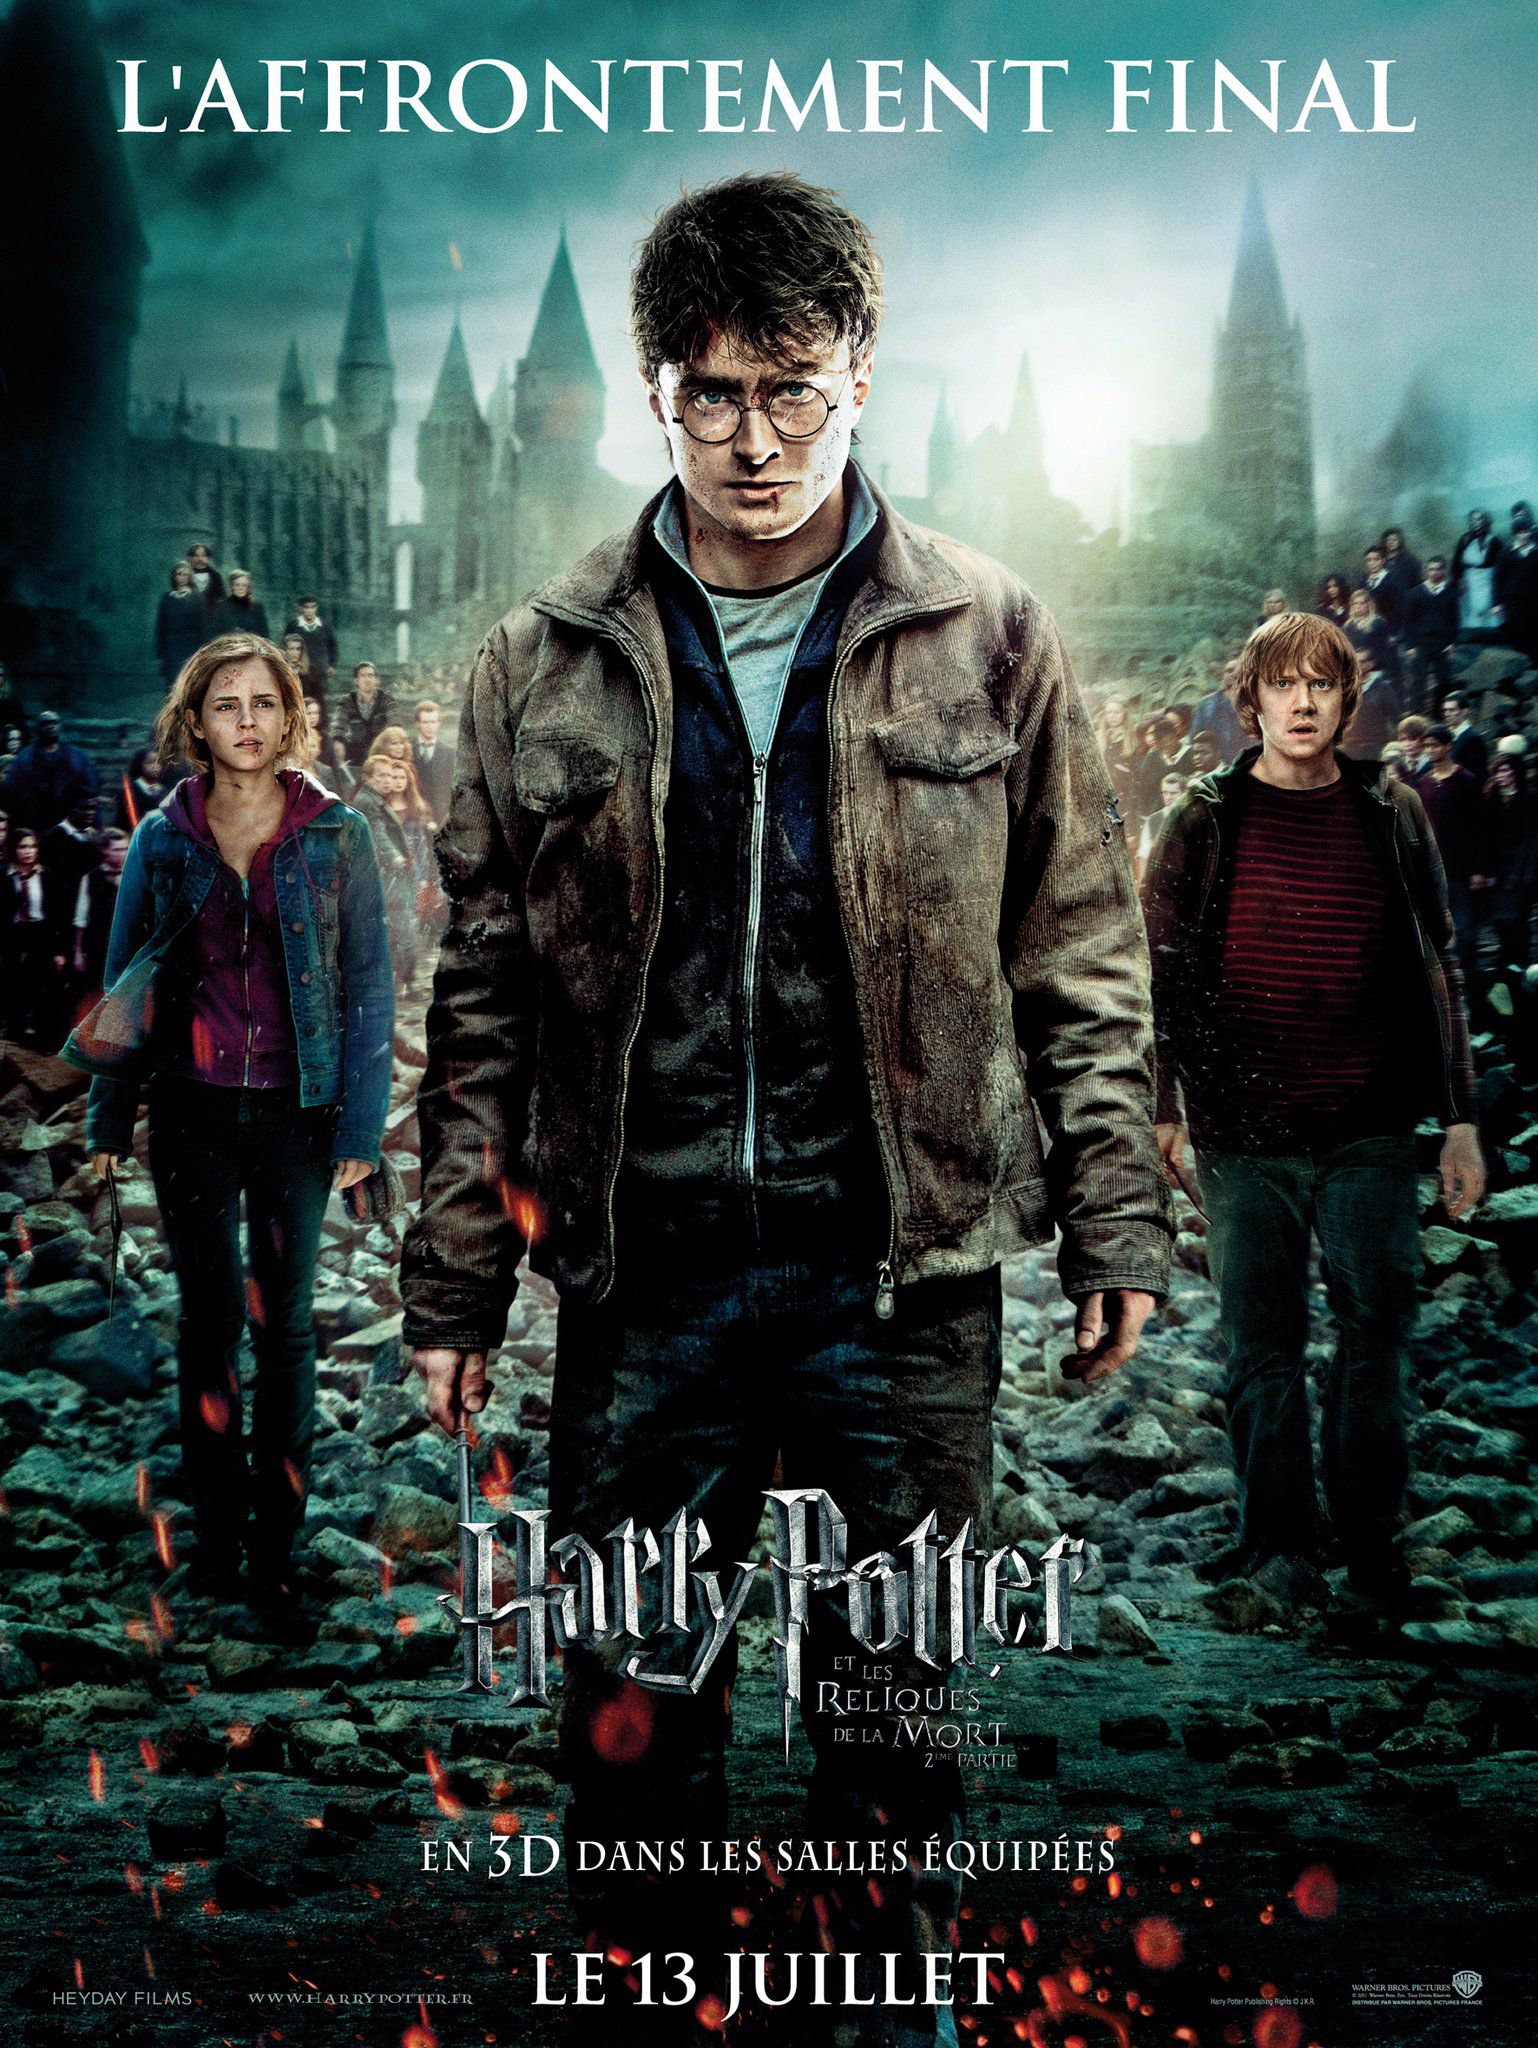 Harry Potter et les Reliques de la Mort : 2ème partie - Film (2011) streaming VF gratuit complet